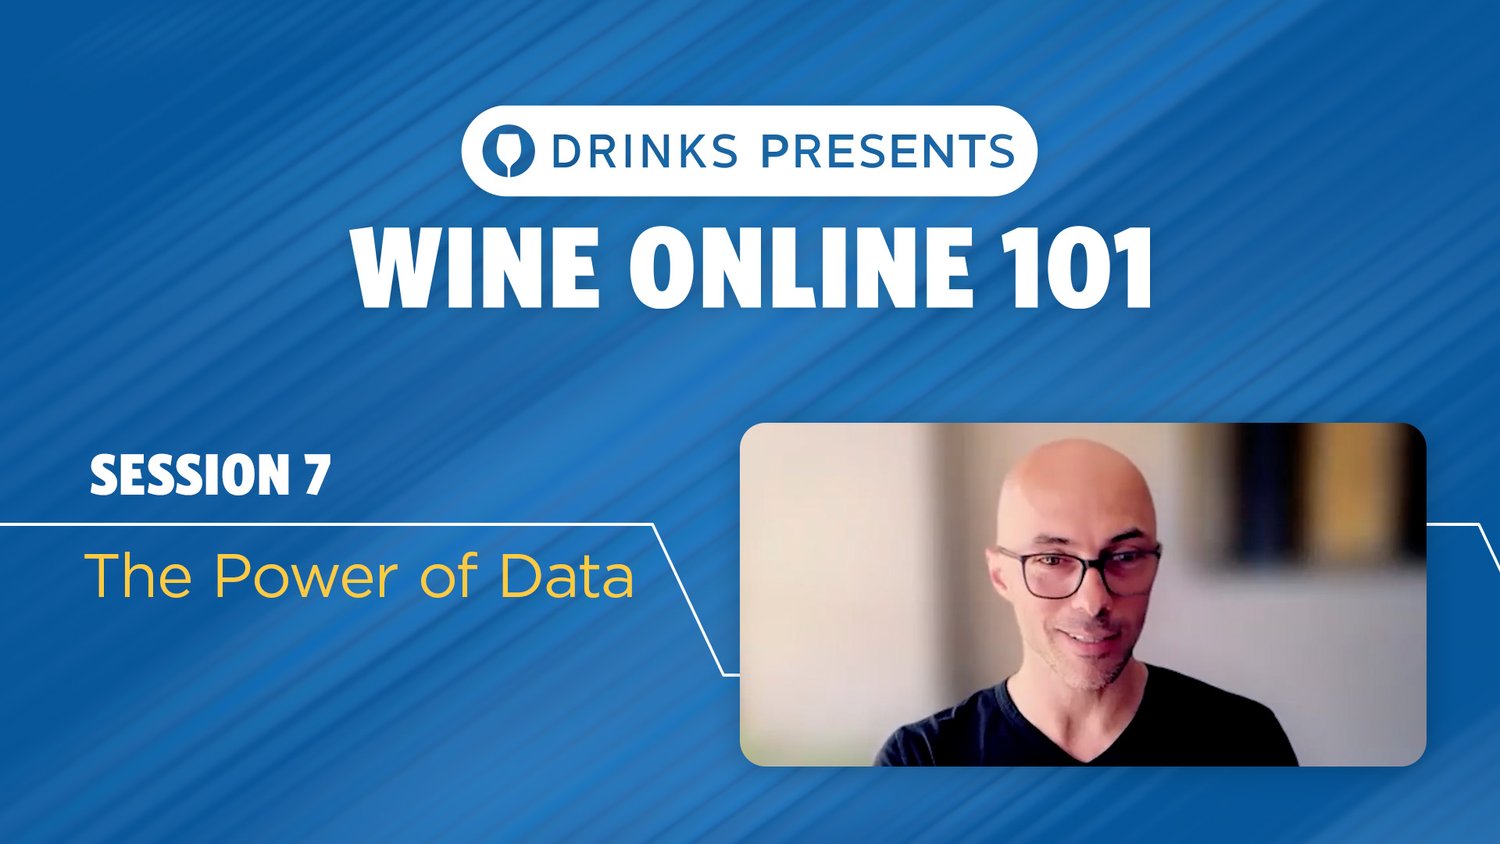 drinks-wine-online-101-title-slide-session-07